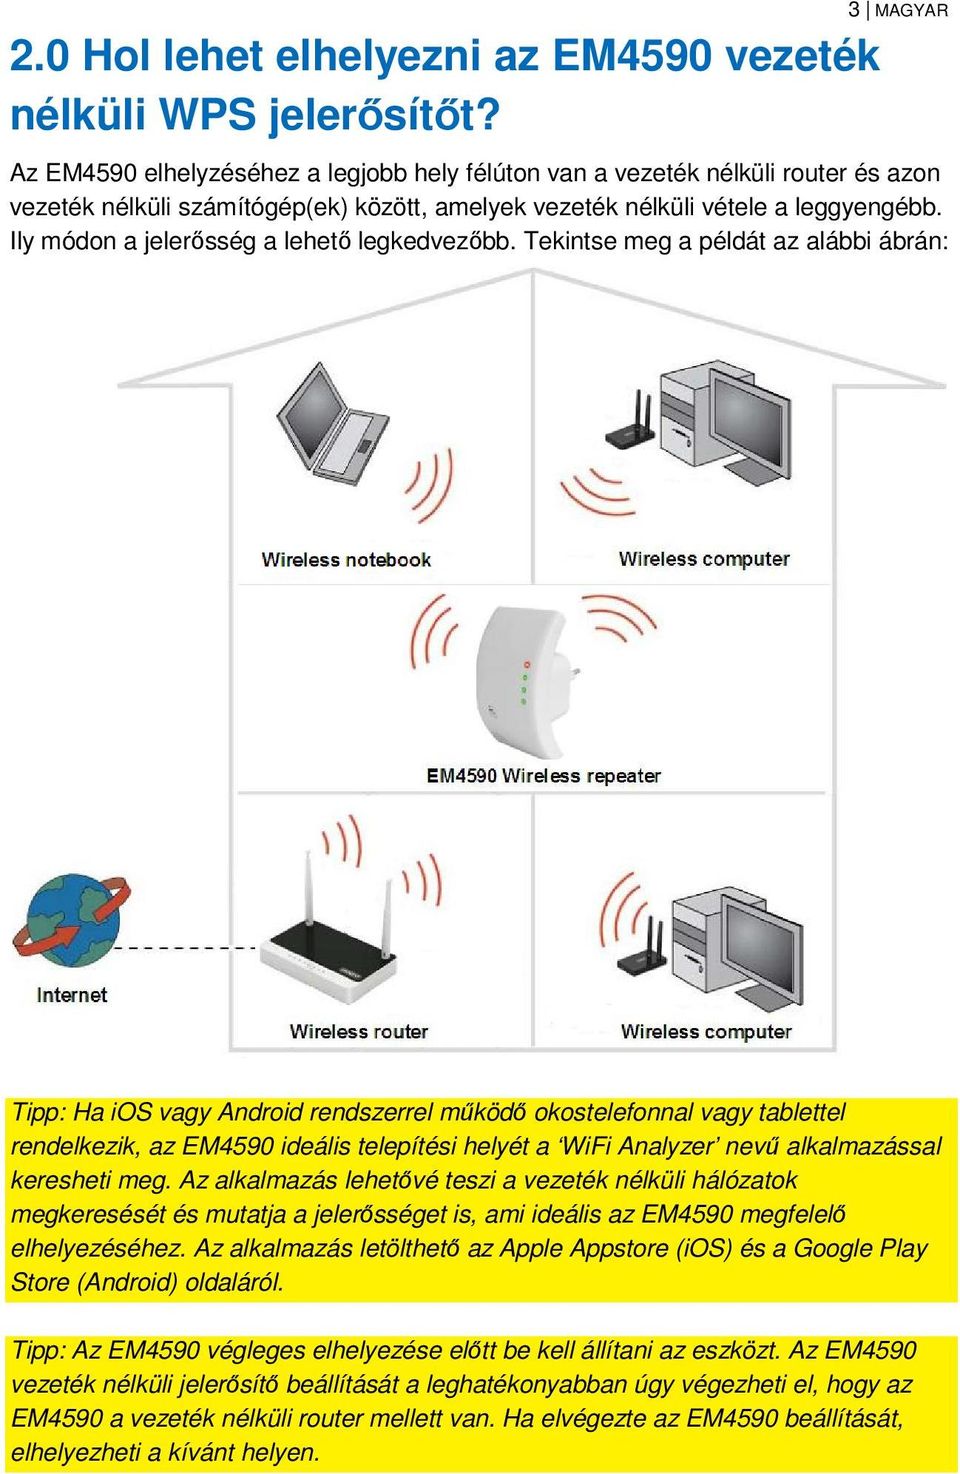 EM4590R1 Univerzális Wi-Fi-jelerősítő WPS funkcióval - PDF Ingyenes letöltés